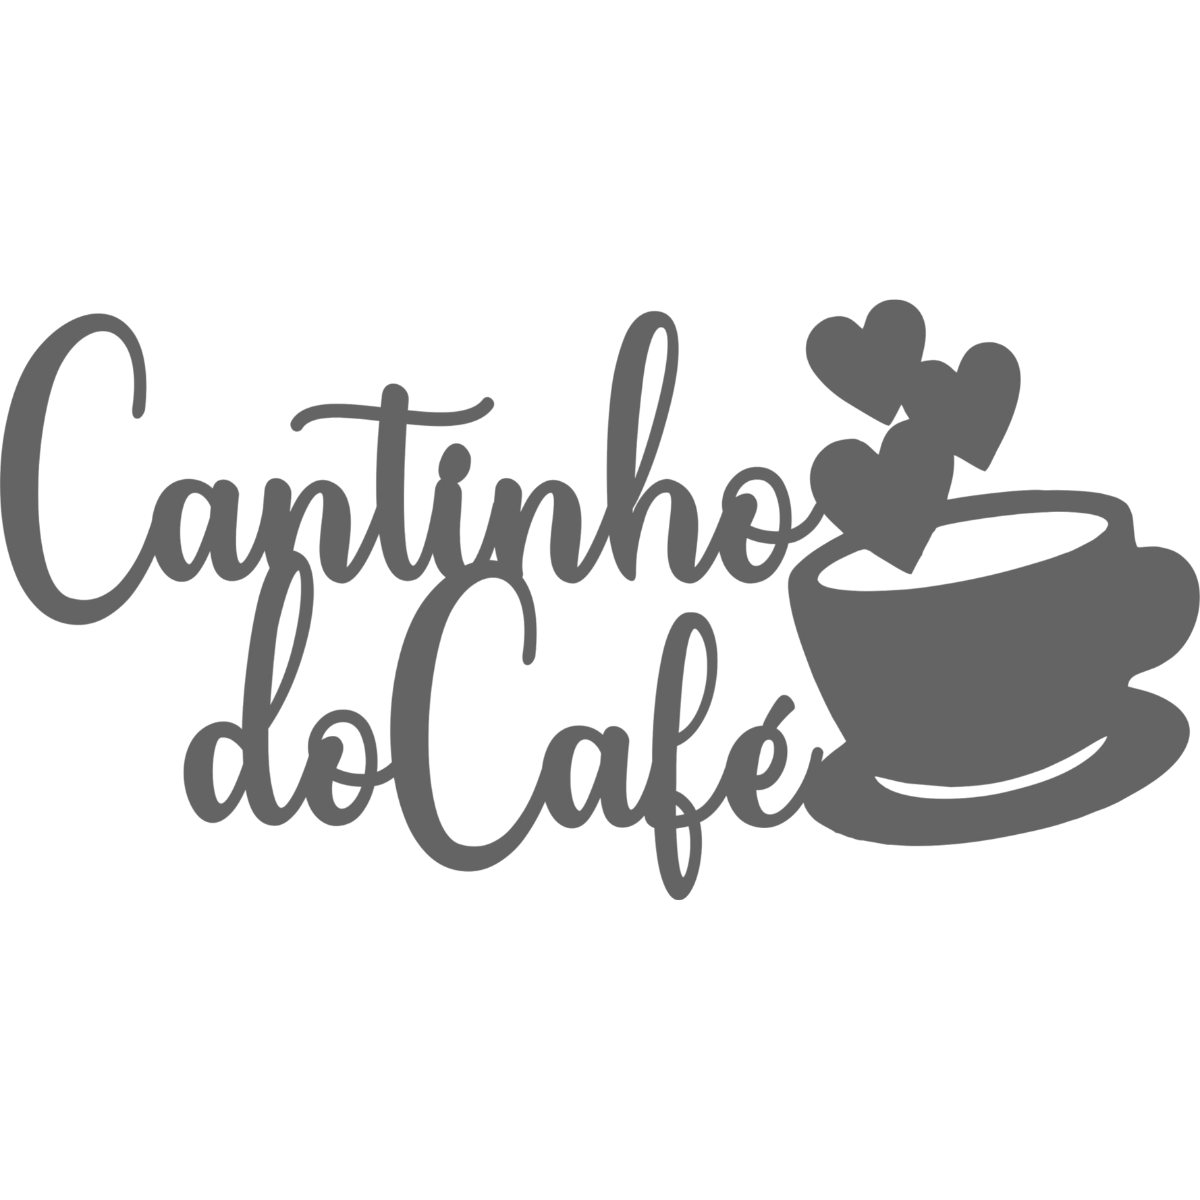 Cantinho do Cafe - Xícara - Decorativo - MDF - Preto - Moldura Decoração Retro- 58x30cm